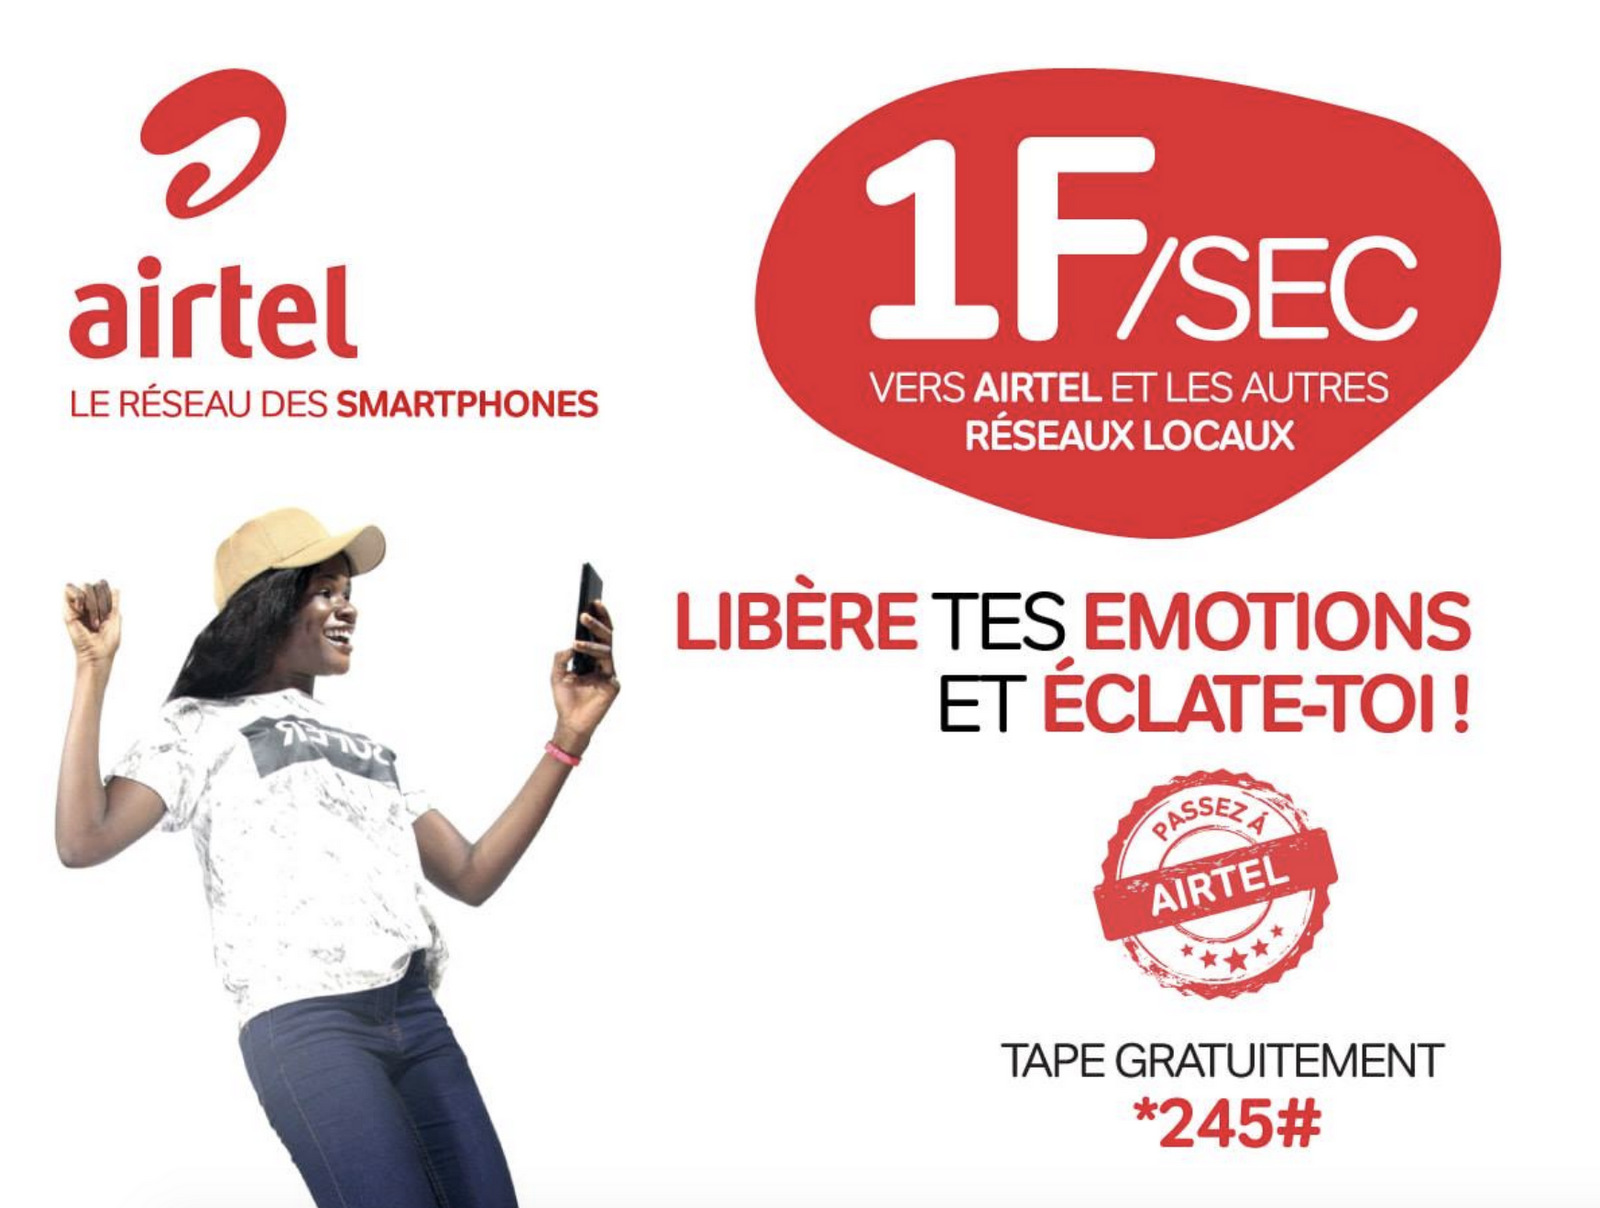 Airtel Tchad ramène le tarif de la communication téléphonique à 1F la seconde